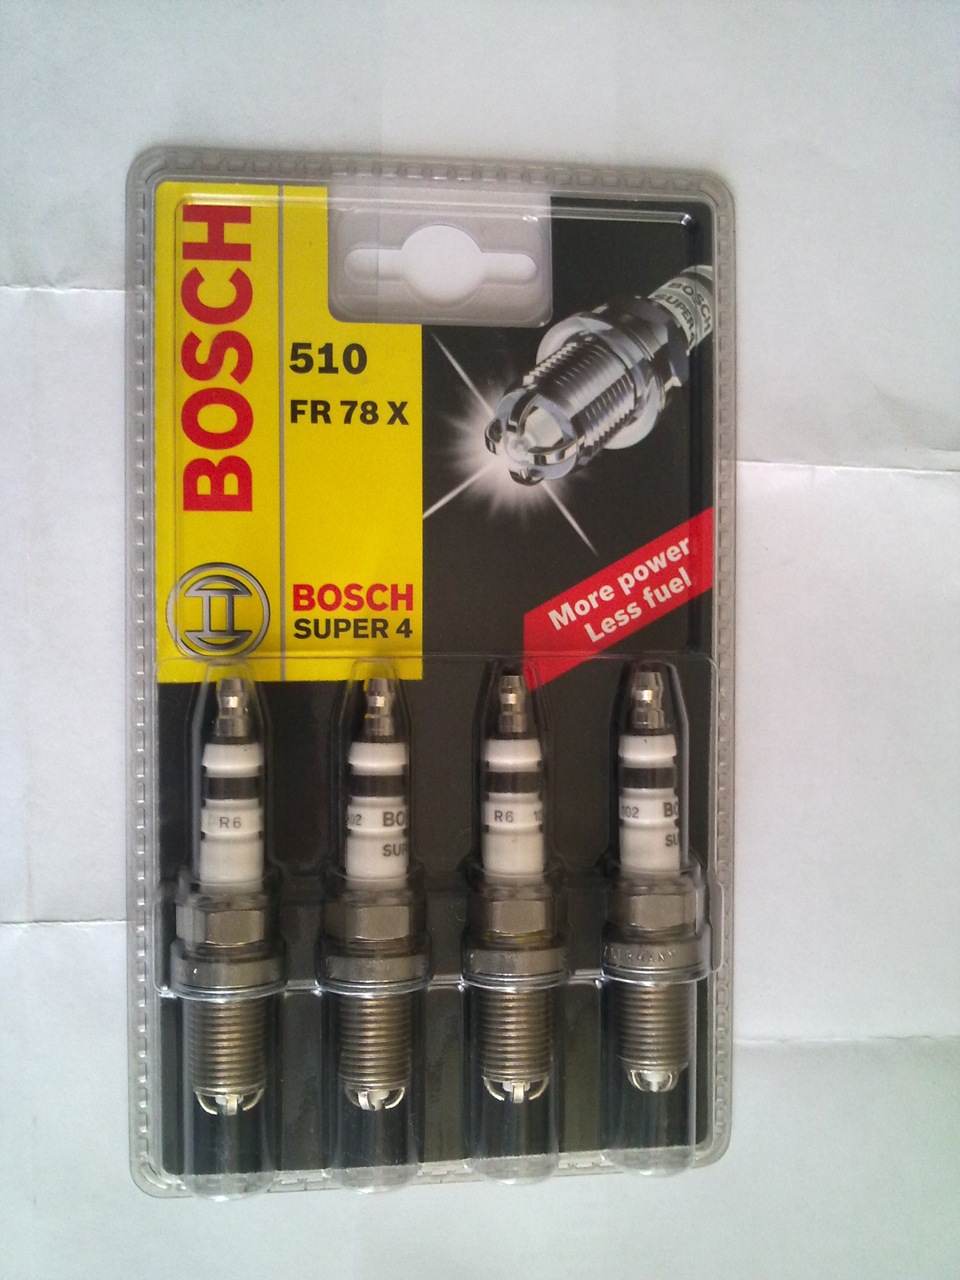 Bosch super 4. Bosch fr78x свеча зажигания. Свеча зажигания Босч fr78x super 4. Fr78x Bosch. Bosch super 4 для ВАЗ.